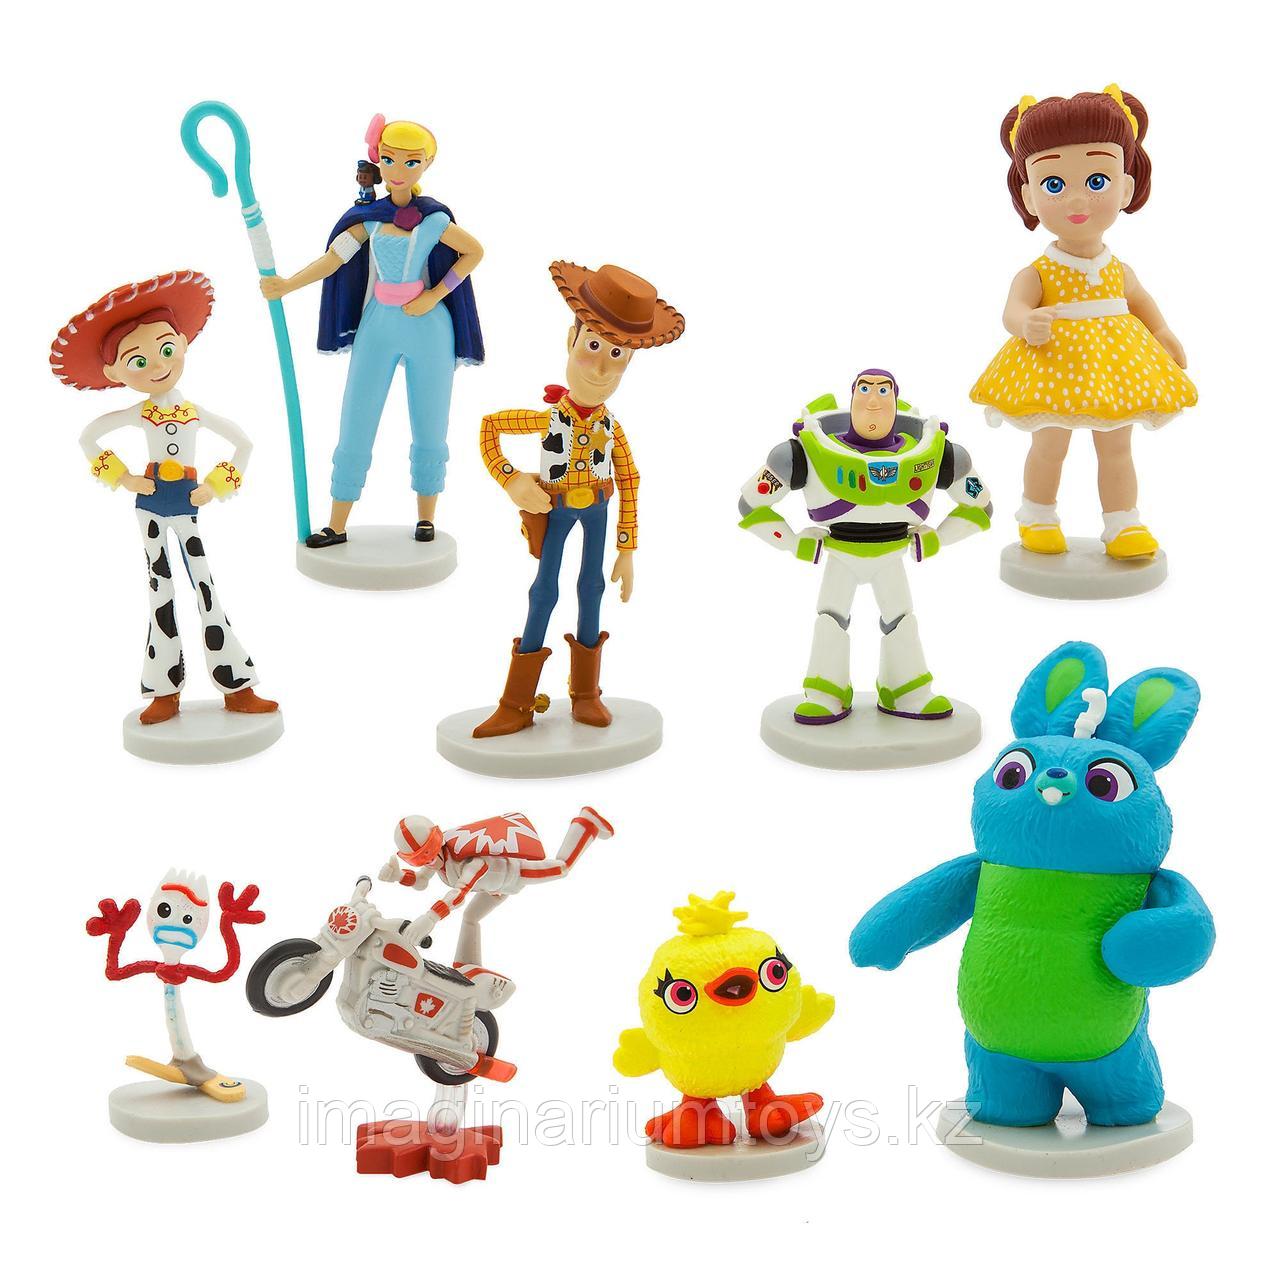 Игровой набор с героями «История игрушек 4», фото 1